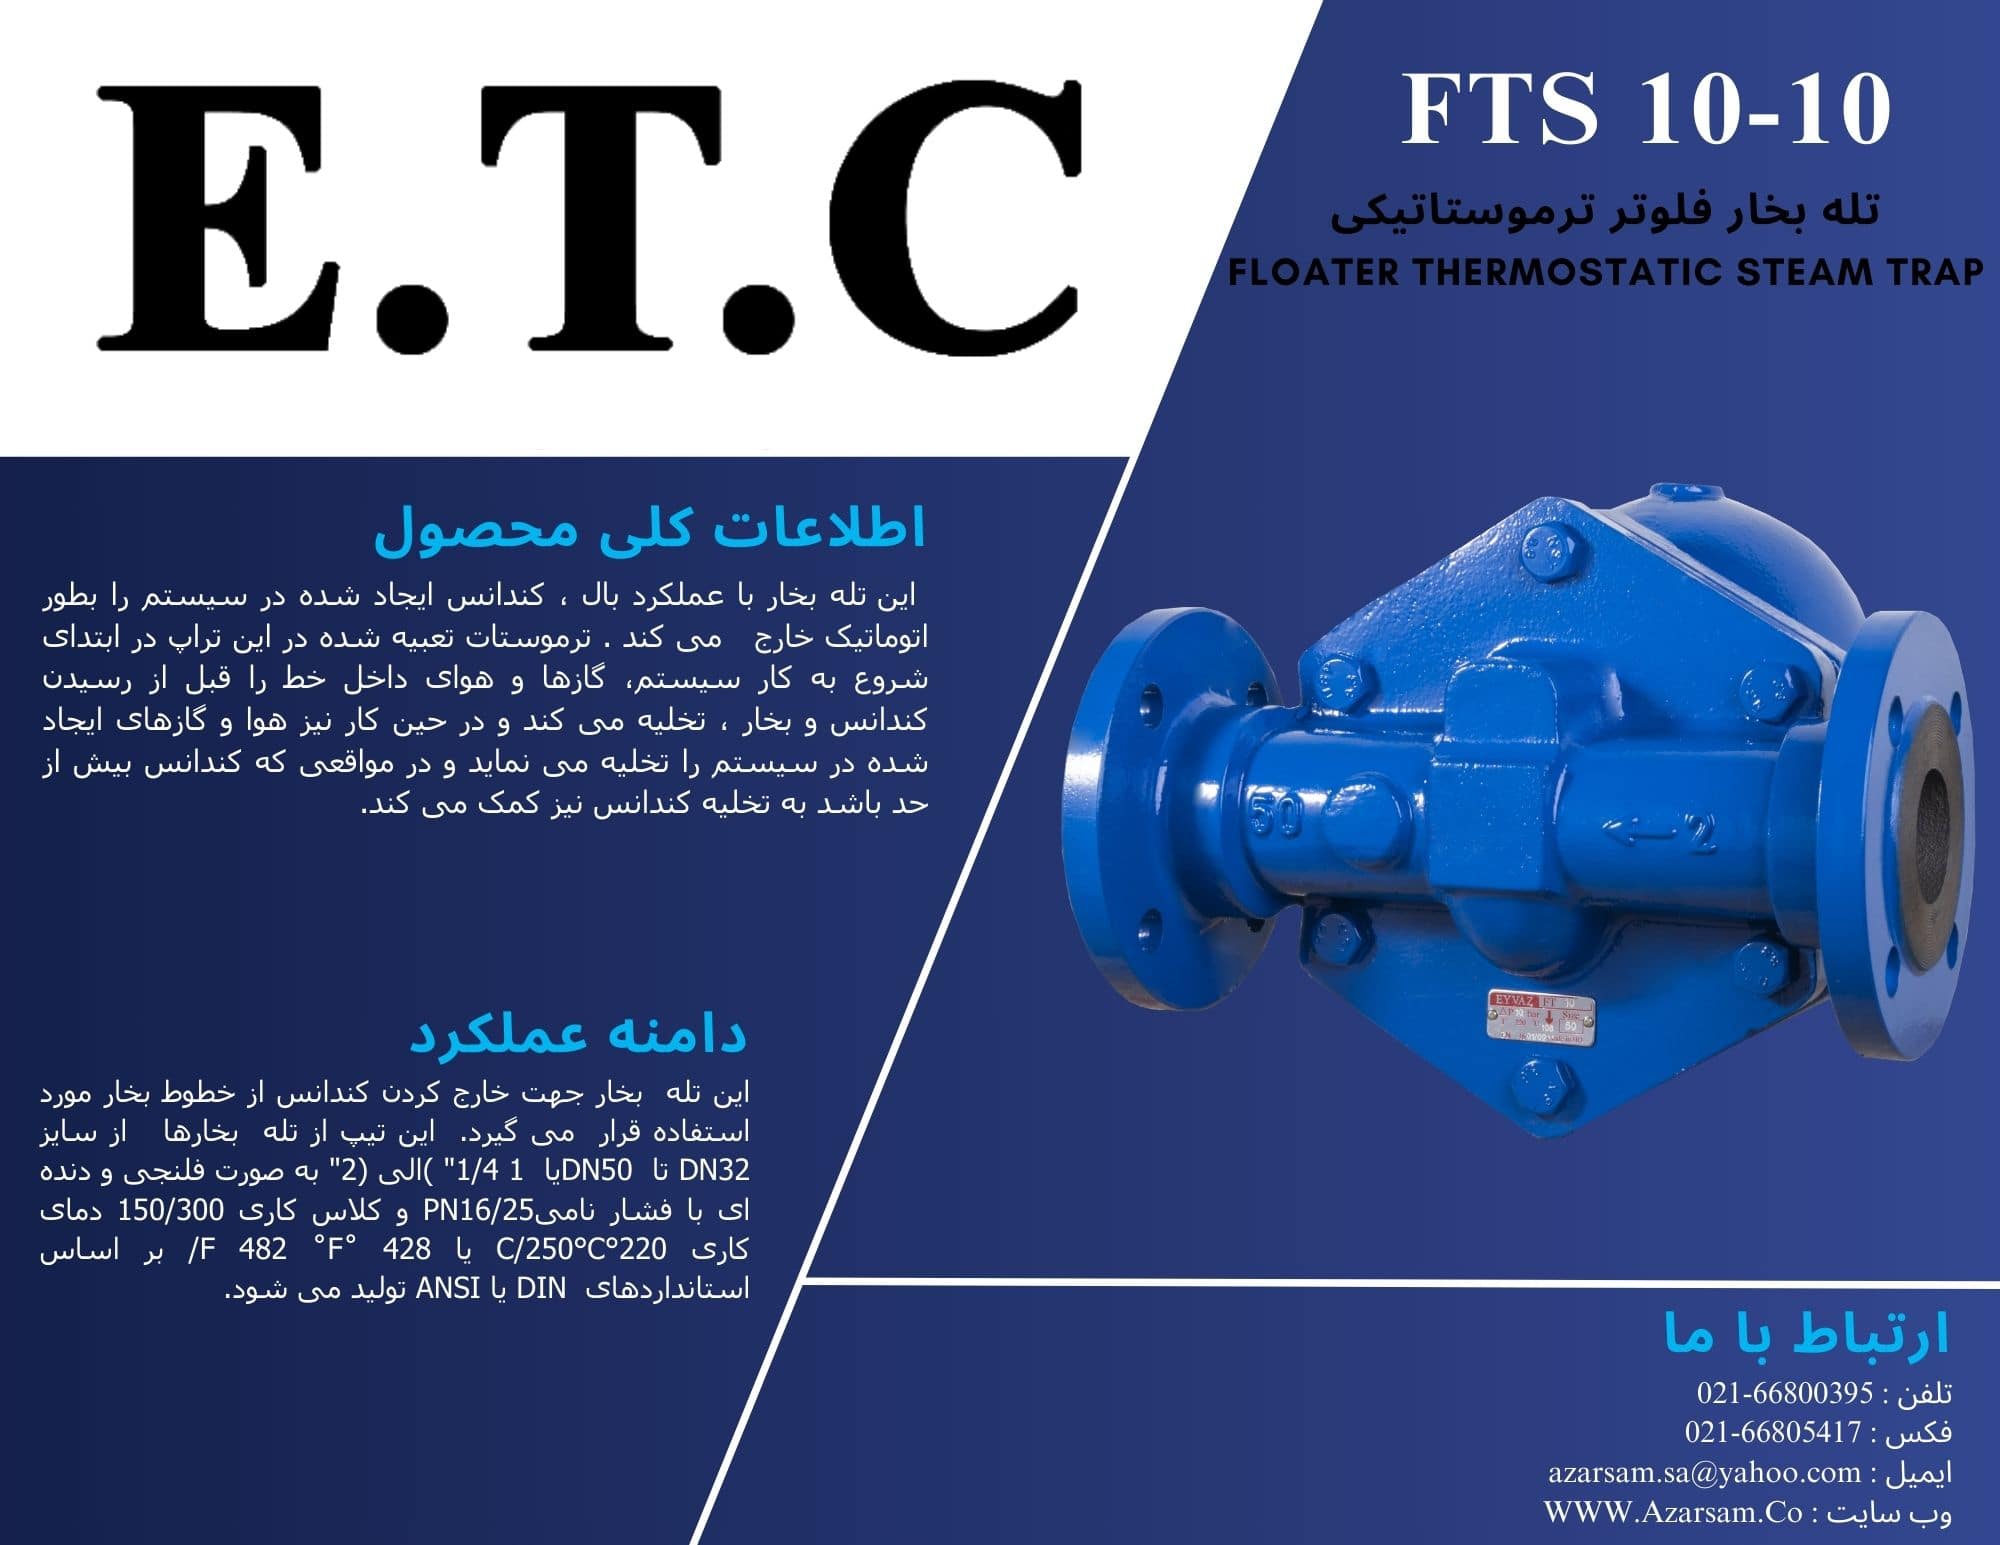 تله بخار فلوتر ترموستاتیکی عیوض Floater Thermostatic Steam Trap FTS 30-10